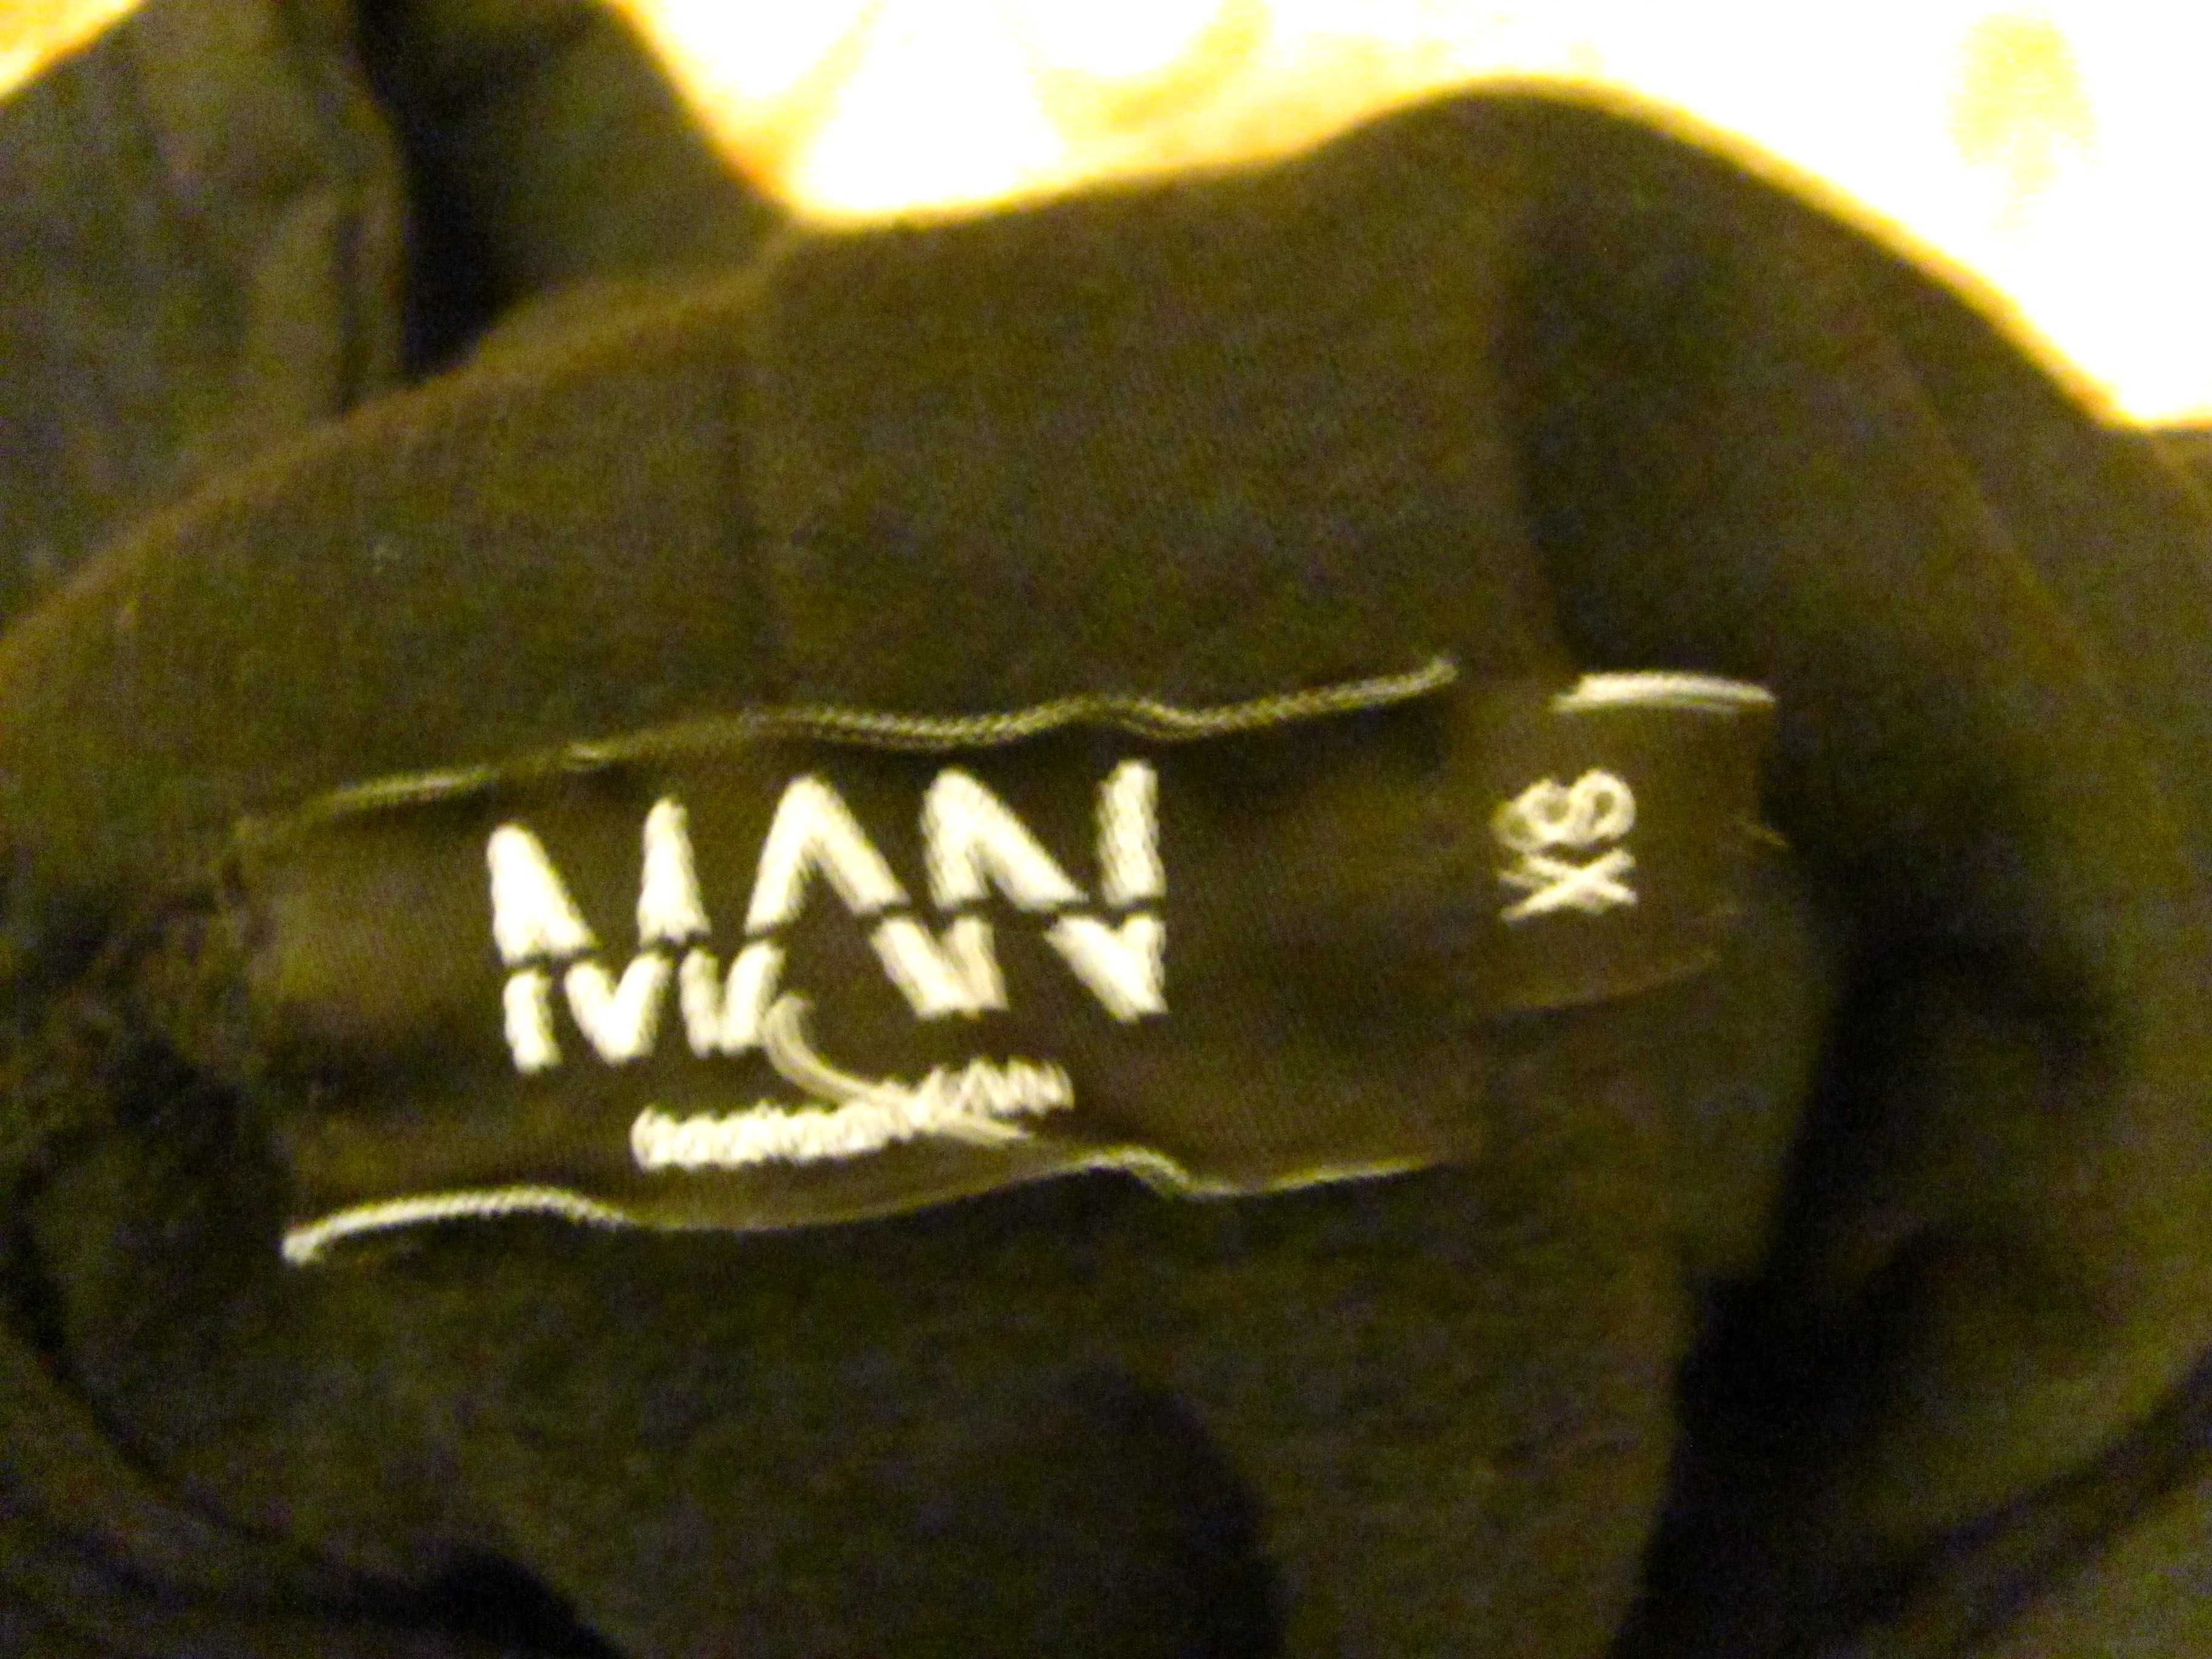 Капюшон, толстовка  с логотипом рок группы Nirvana